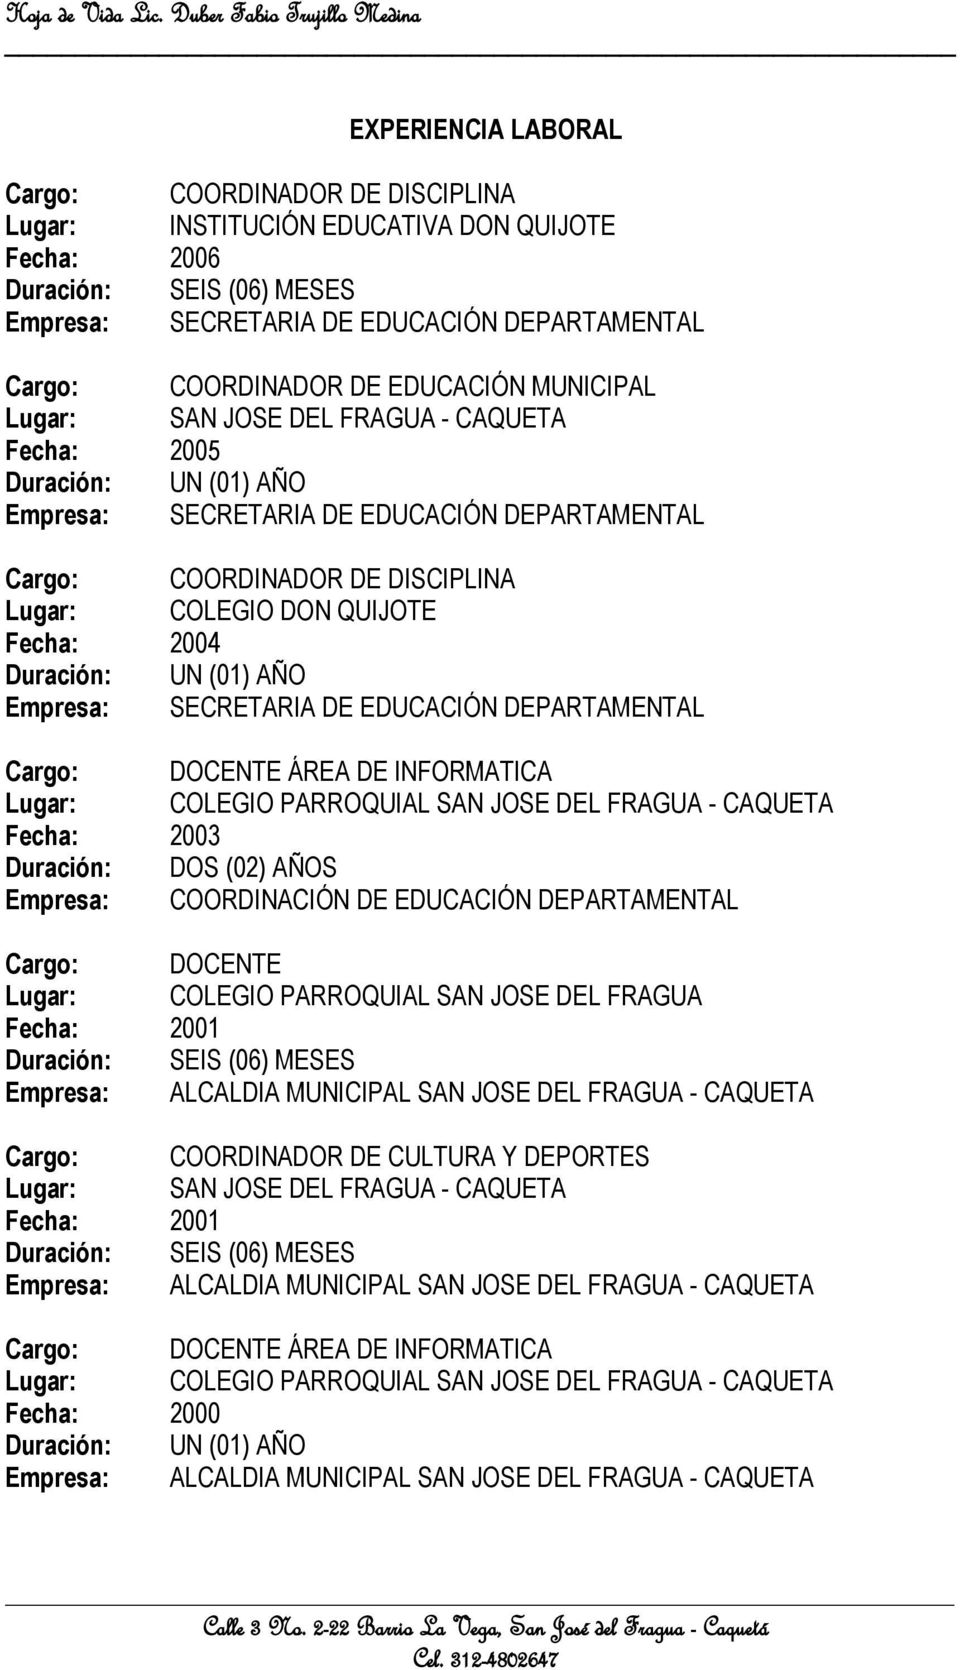 ÁREA DE INFORMATICA Lugar: COLEGIO PARROQUIAL SAN JOSE DEL FRAGUA - CAQUETA Fecha: 2003 Duración: DOS (02) AÑOS Empresa: COORDINACIÓN DE EDUCACIÓN DEPARTAMENTAL Cargo: DOCENTE Lugar: COLEGIO